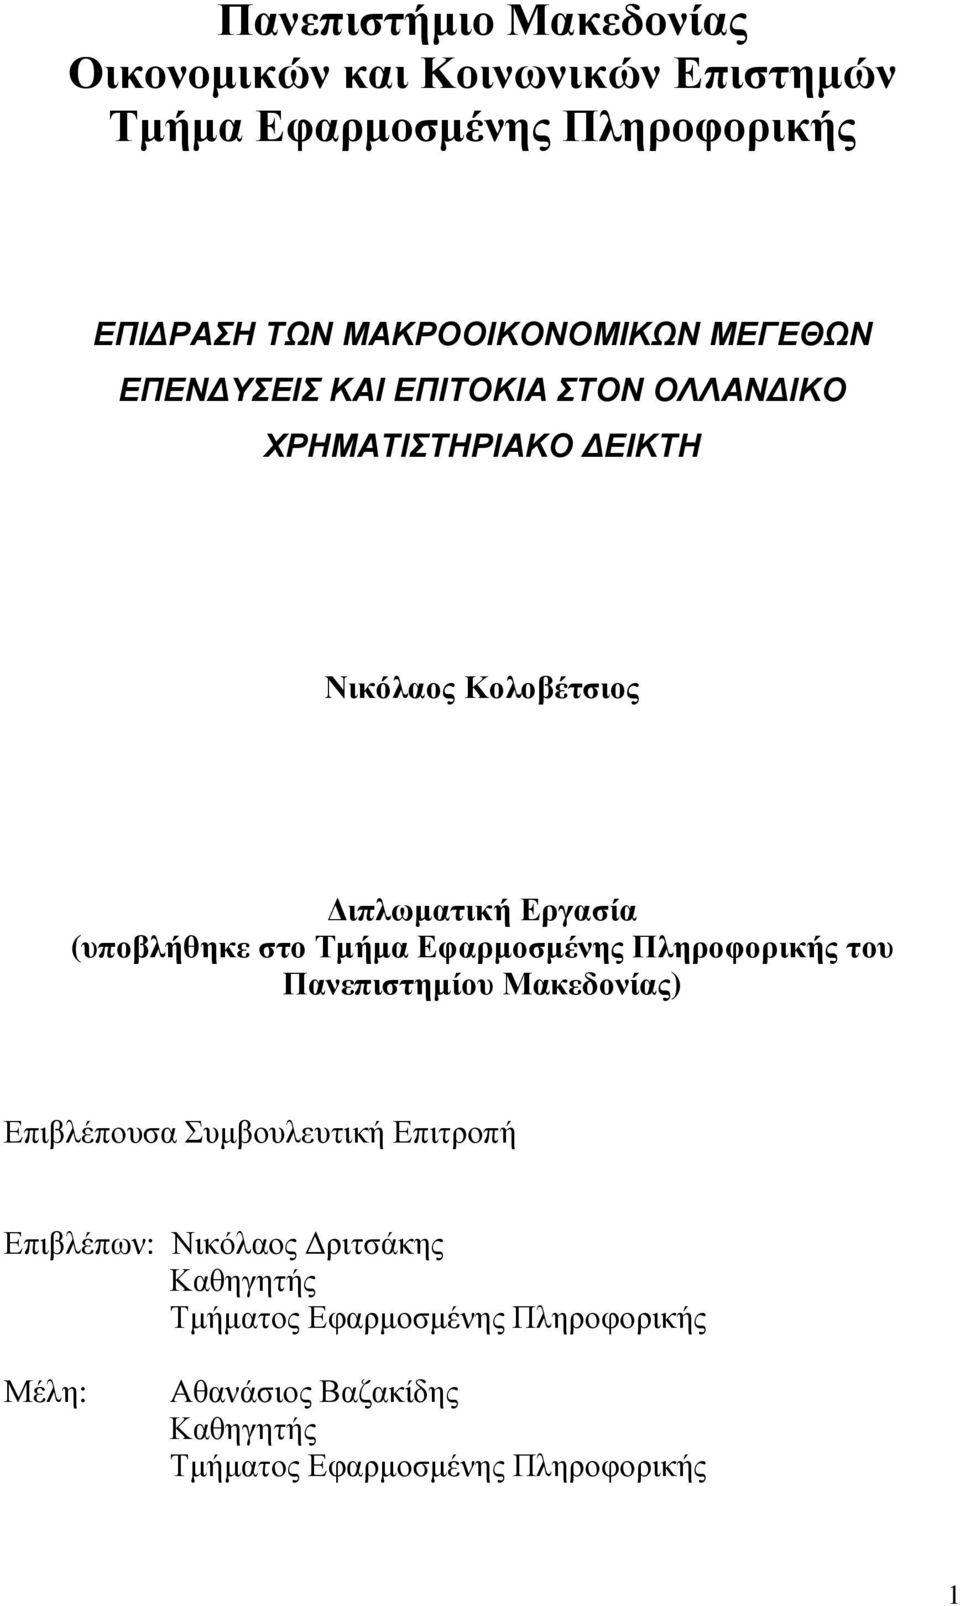 στο Τµήµα Εφαρµοσµένης Πληροφορικής του Πανεπιστηµίου Μακεδονίας) Επιβλέπουσα Συµβουλευτική Επιτροπή Επιβλέπων: Νικόλαος